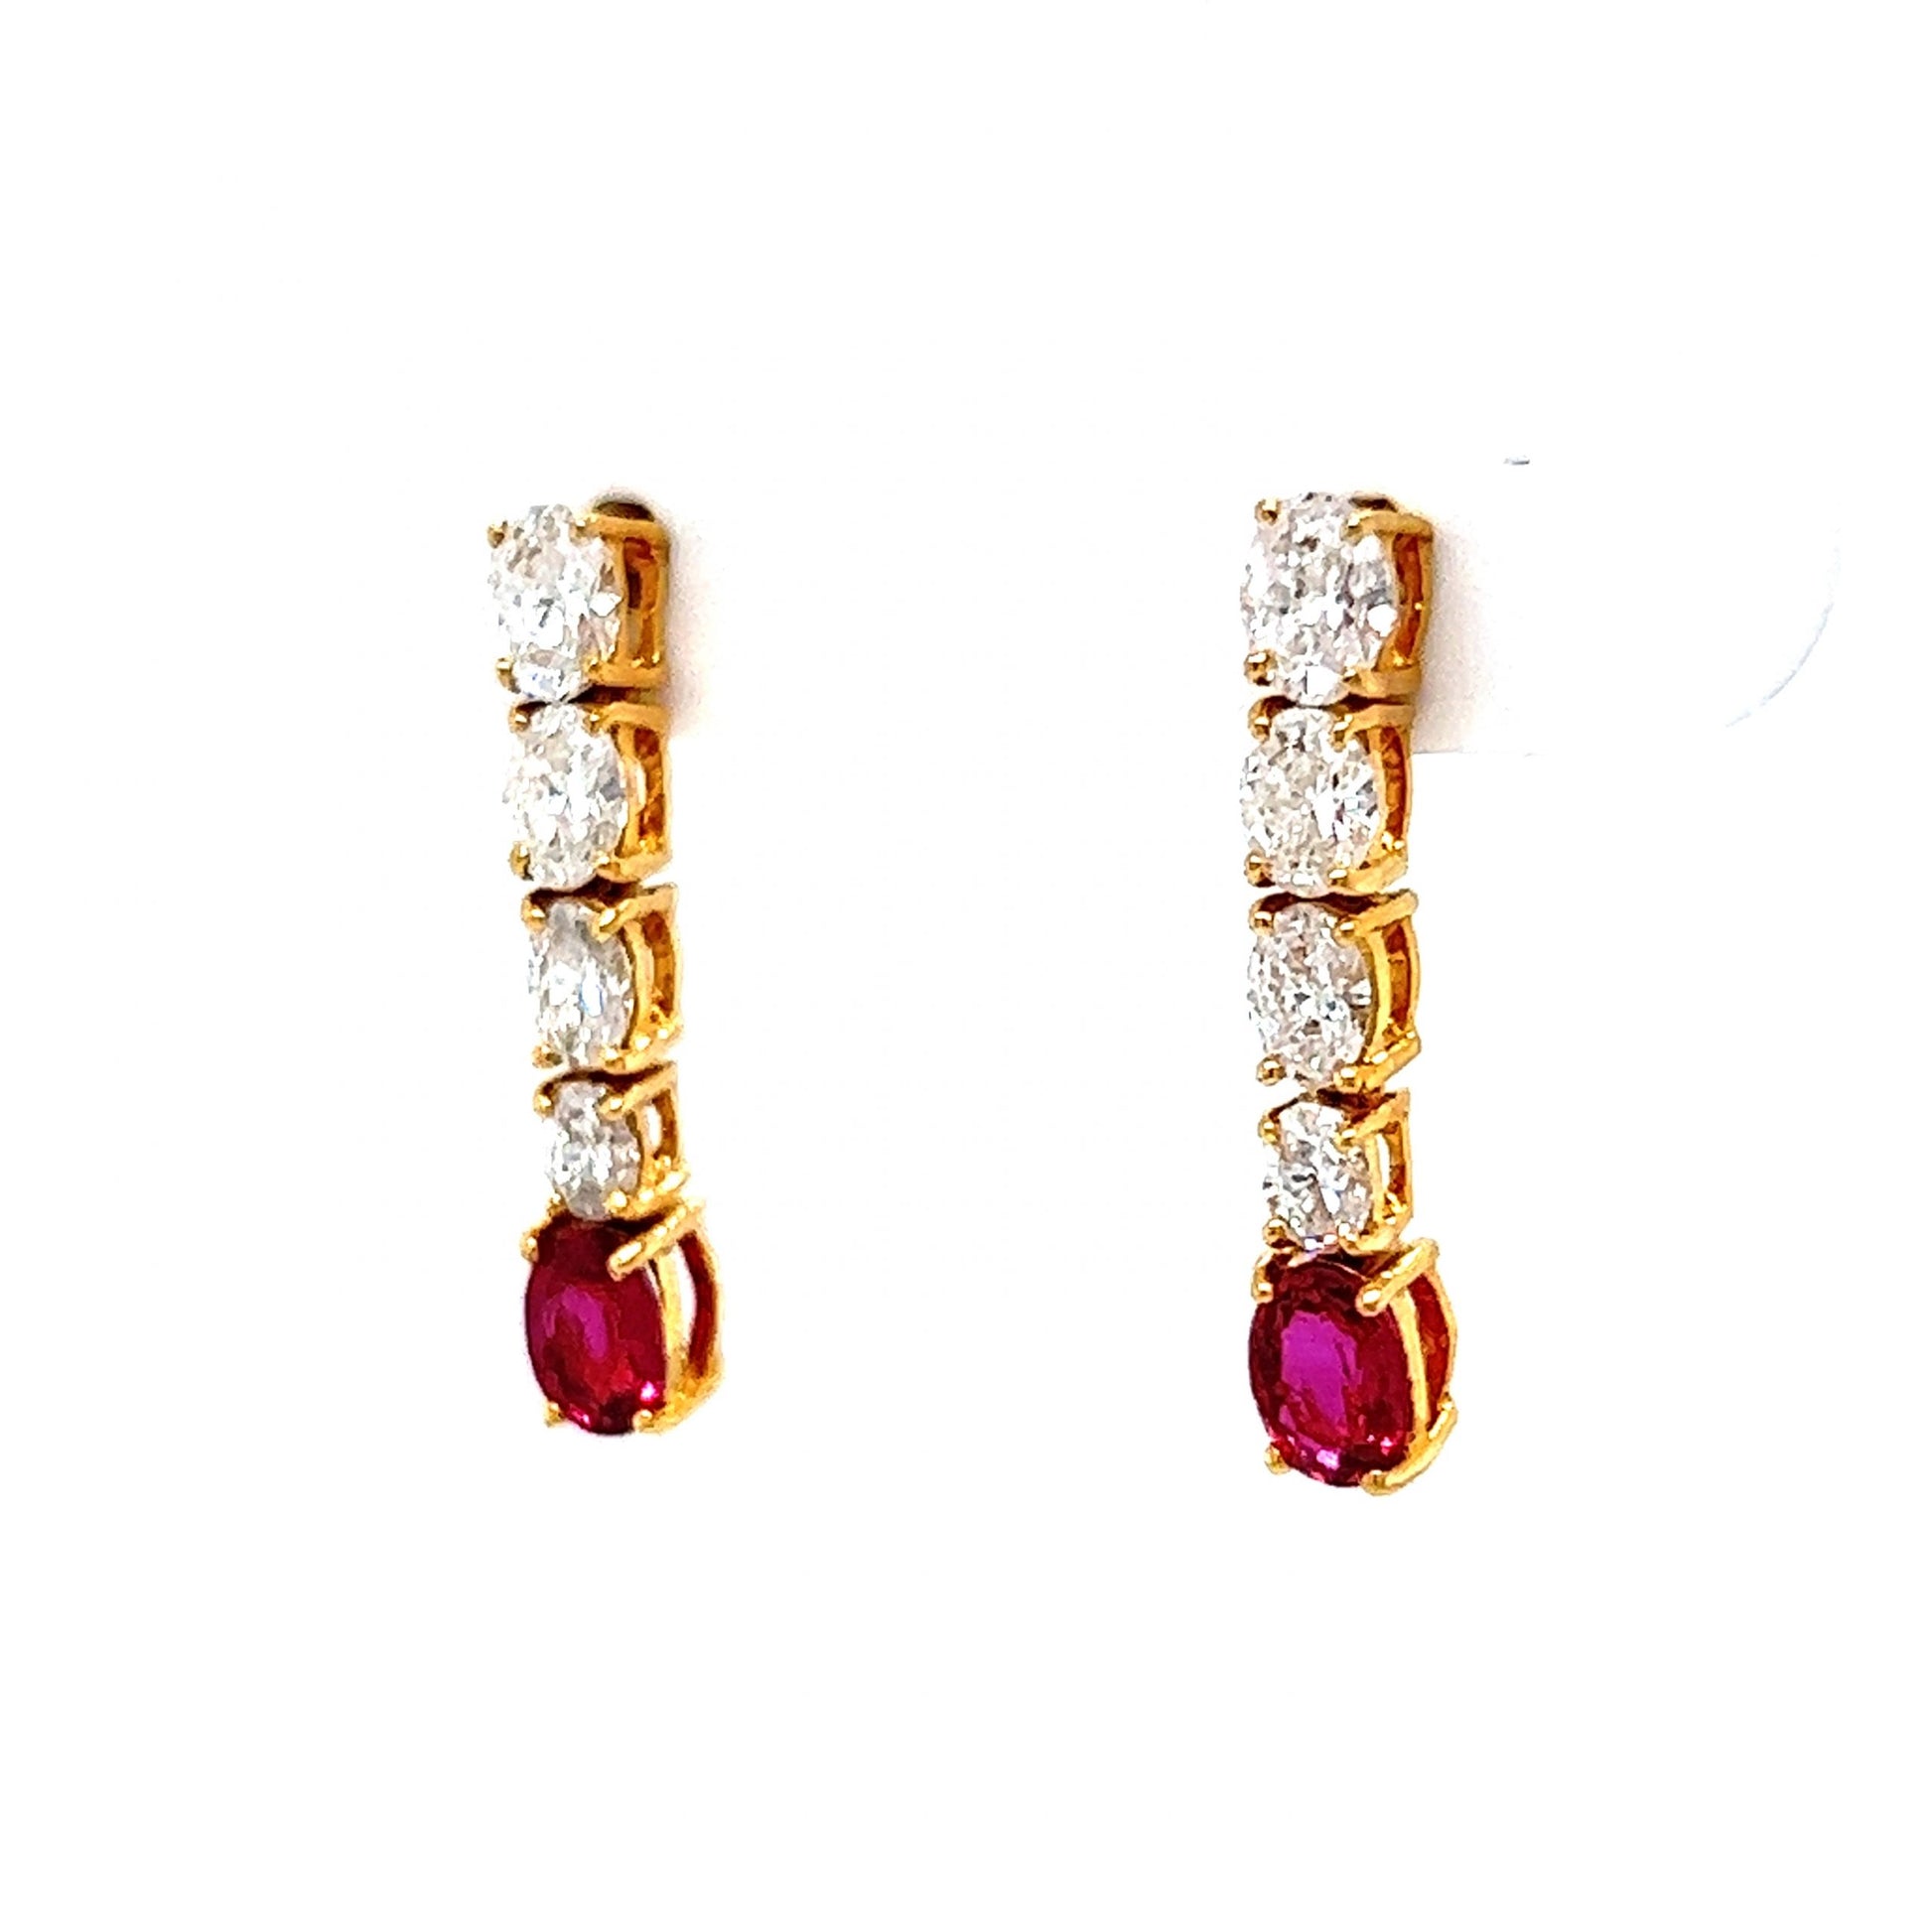 Oval Cut Diamond & Ruby Drop Earrings in 18k Yellow Gold